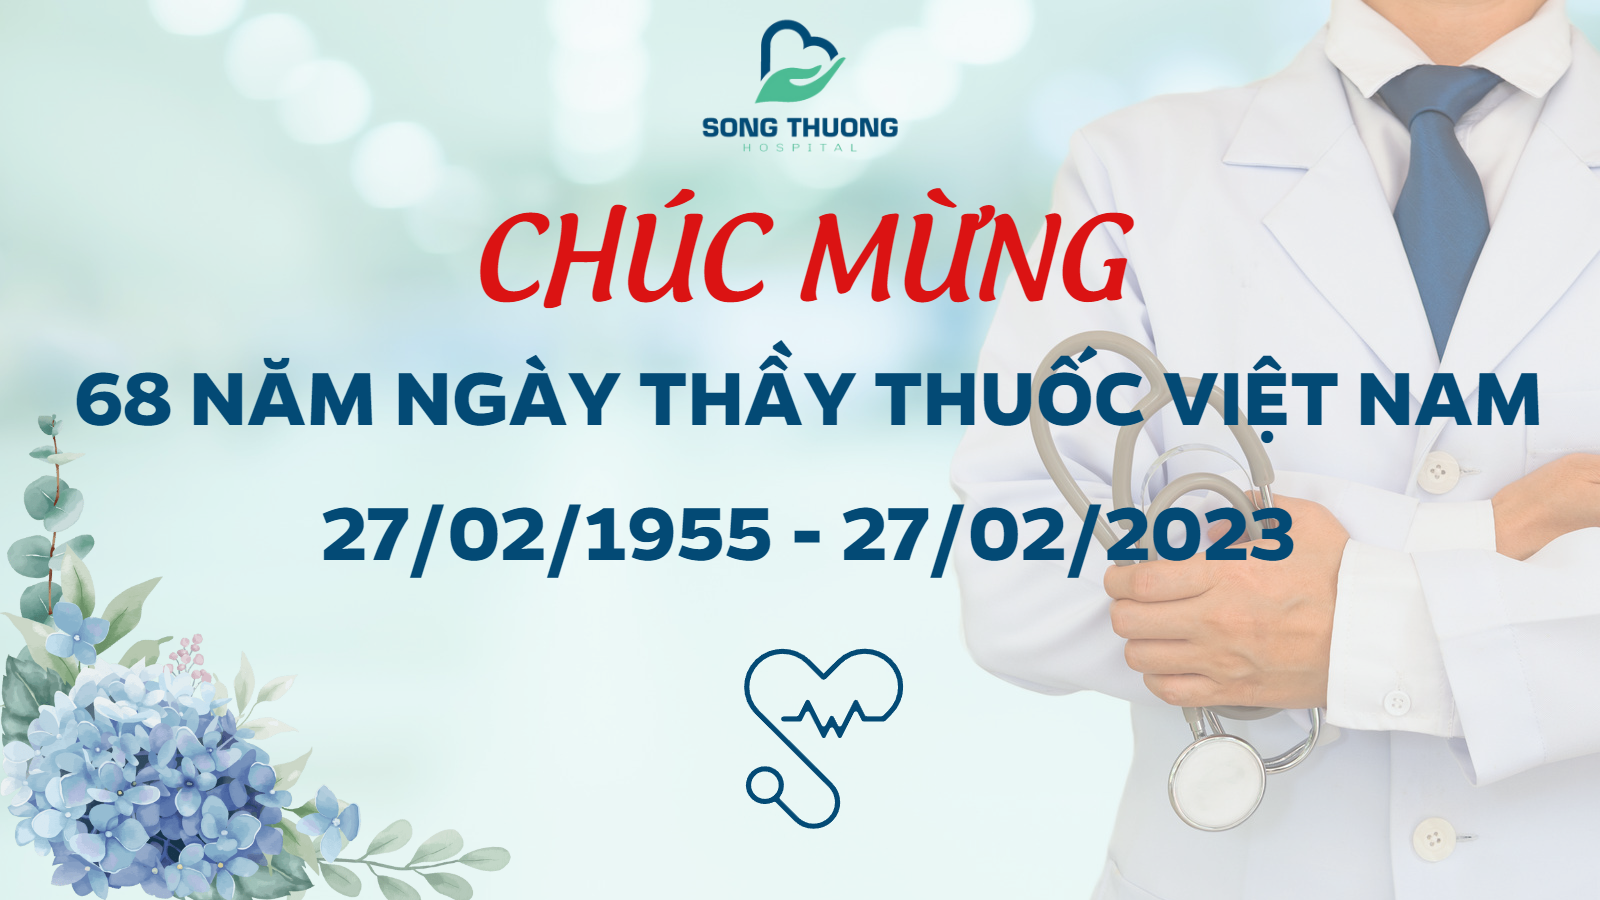 Chúc Mừng 68 Năm Ngày Thầy Thuốc Việt Nam (27/02/1955 - 27/02/2023)